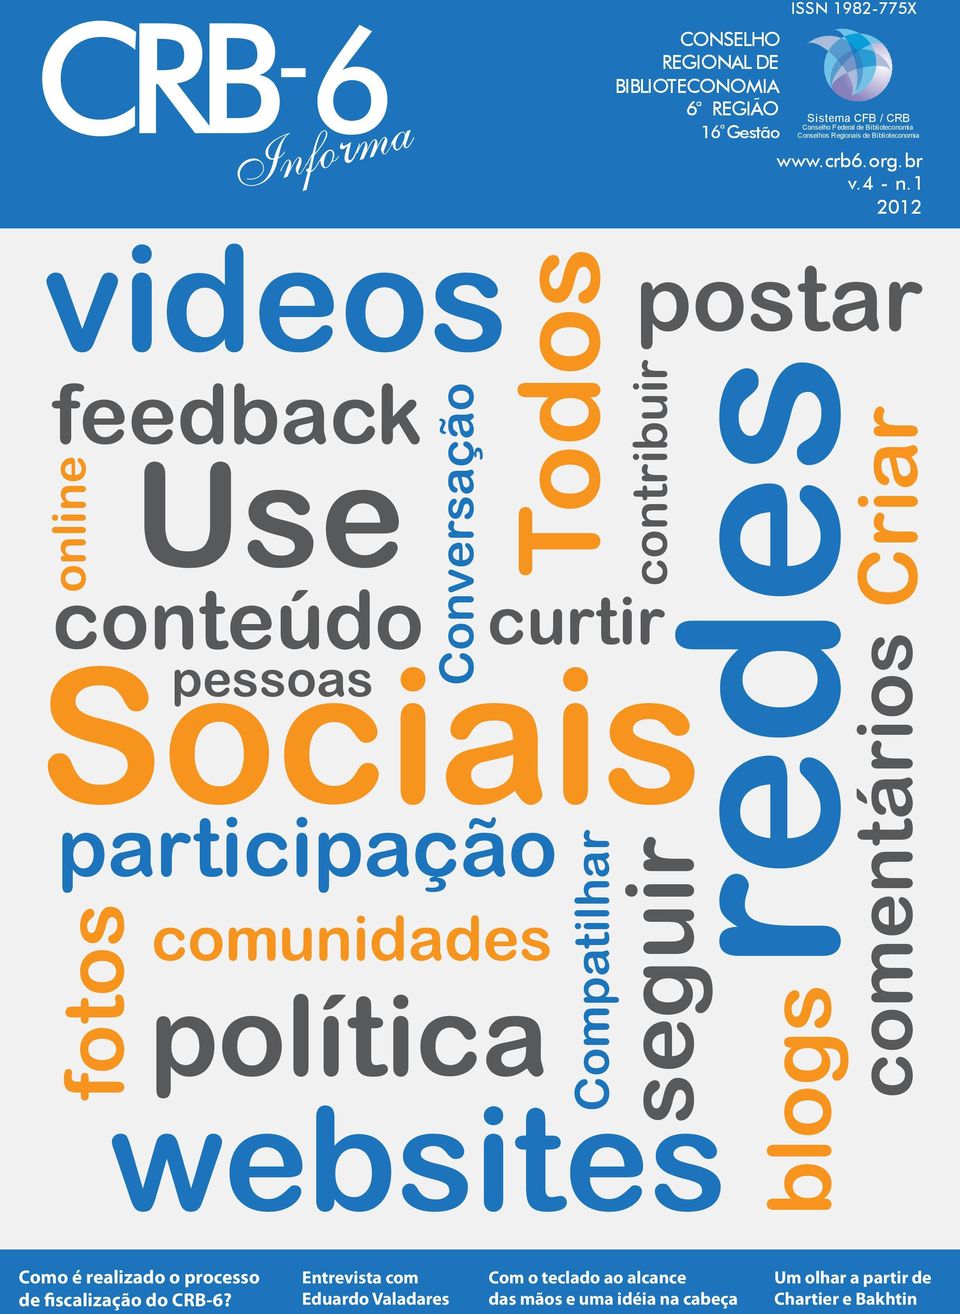 1 2012 videos Use conteúdo online feedback Todos Sociais pessoas fotos Conversação participação comunidades política curtir Compatilhar websites